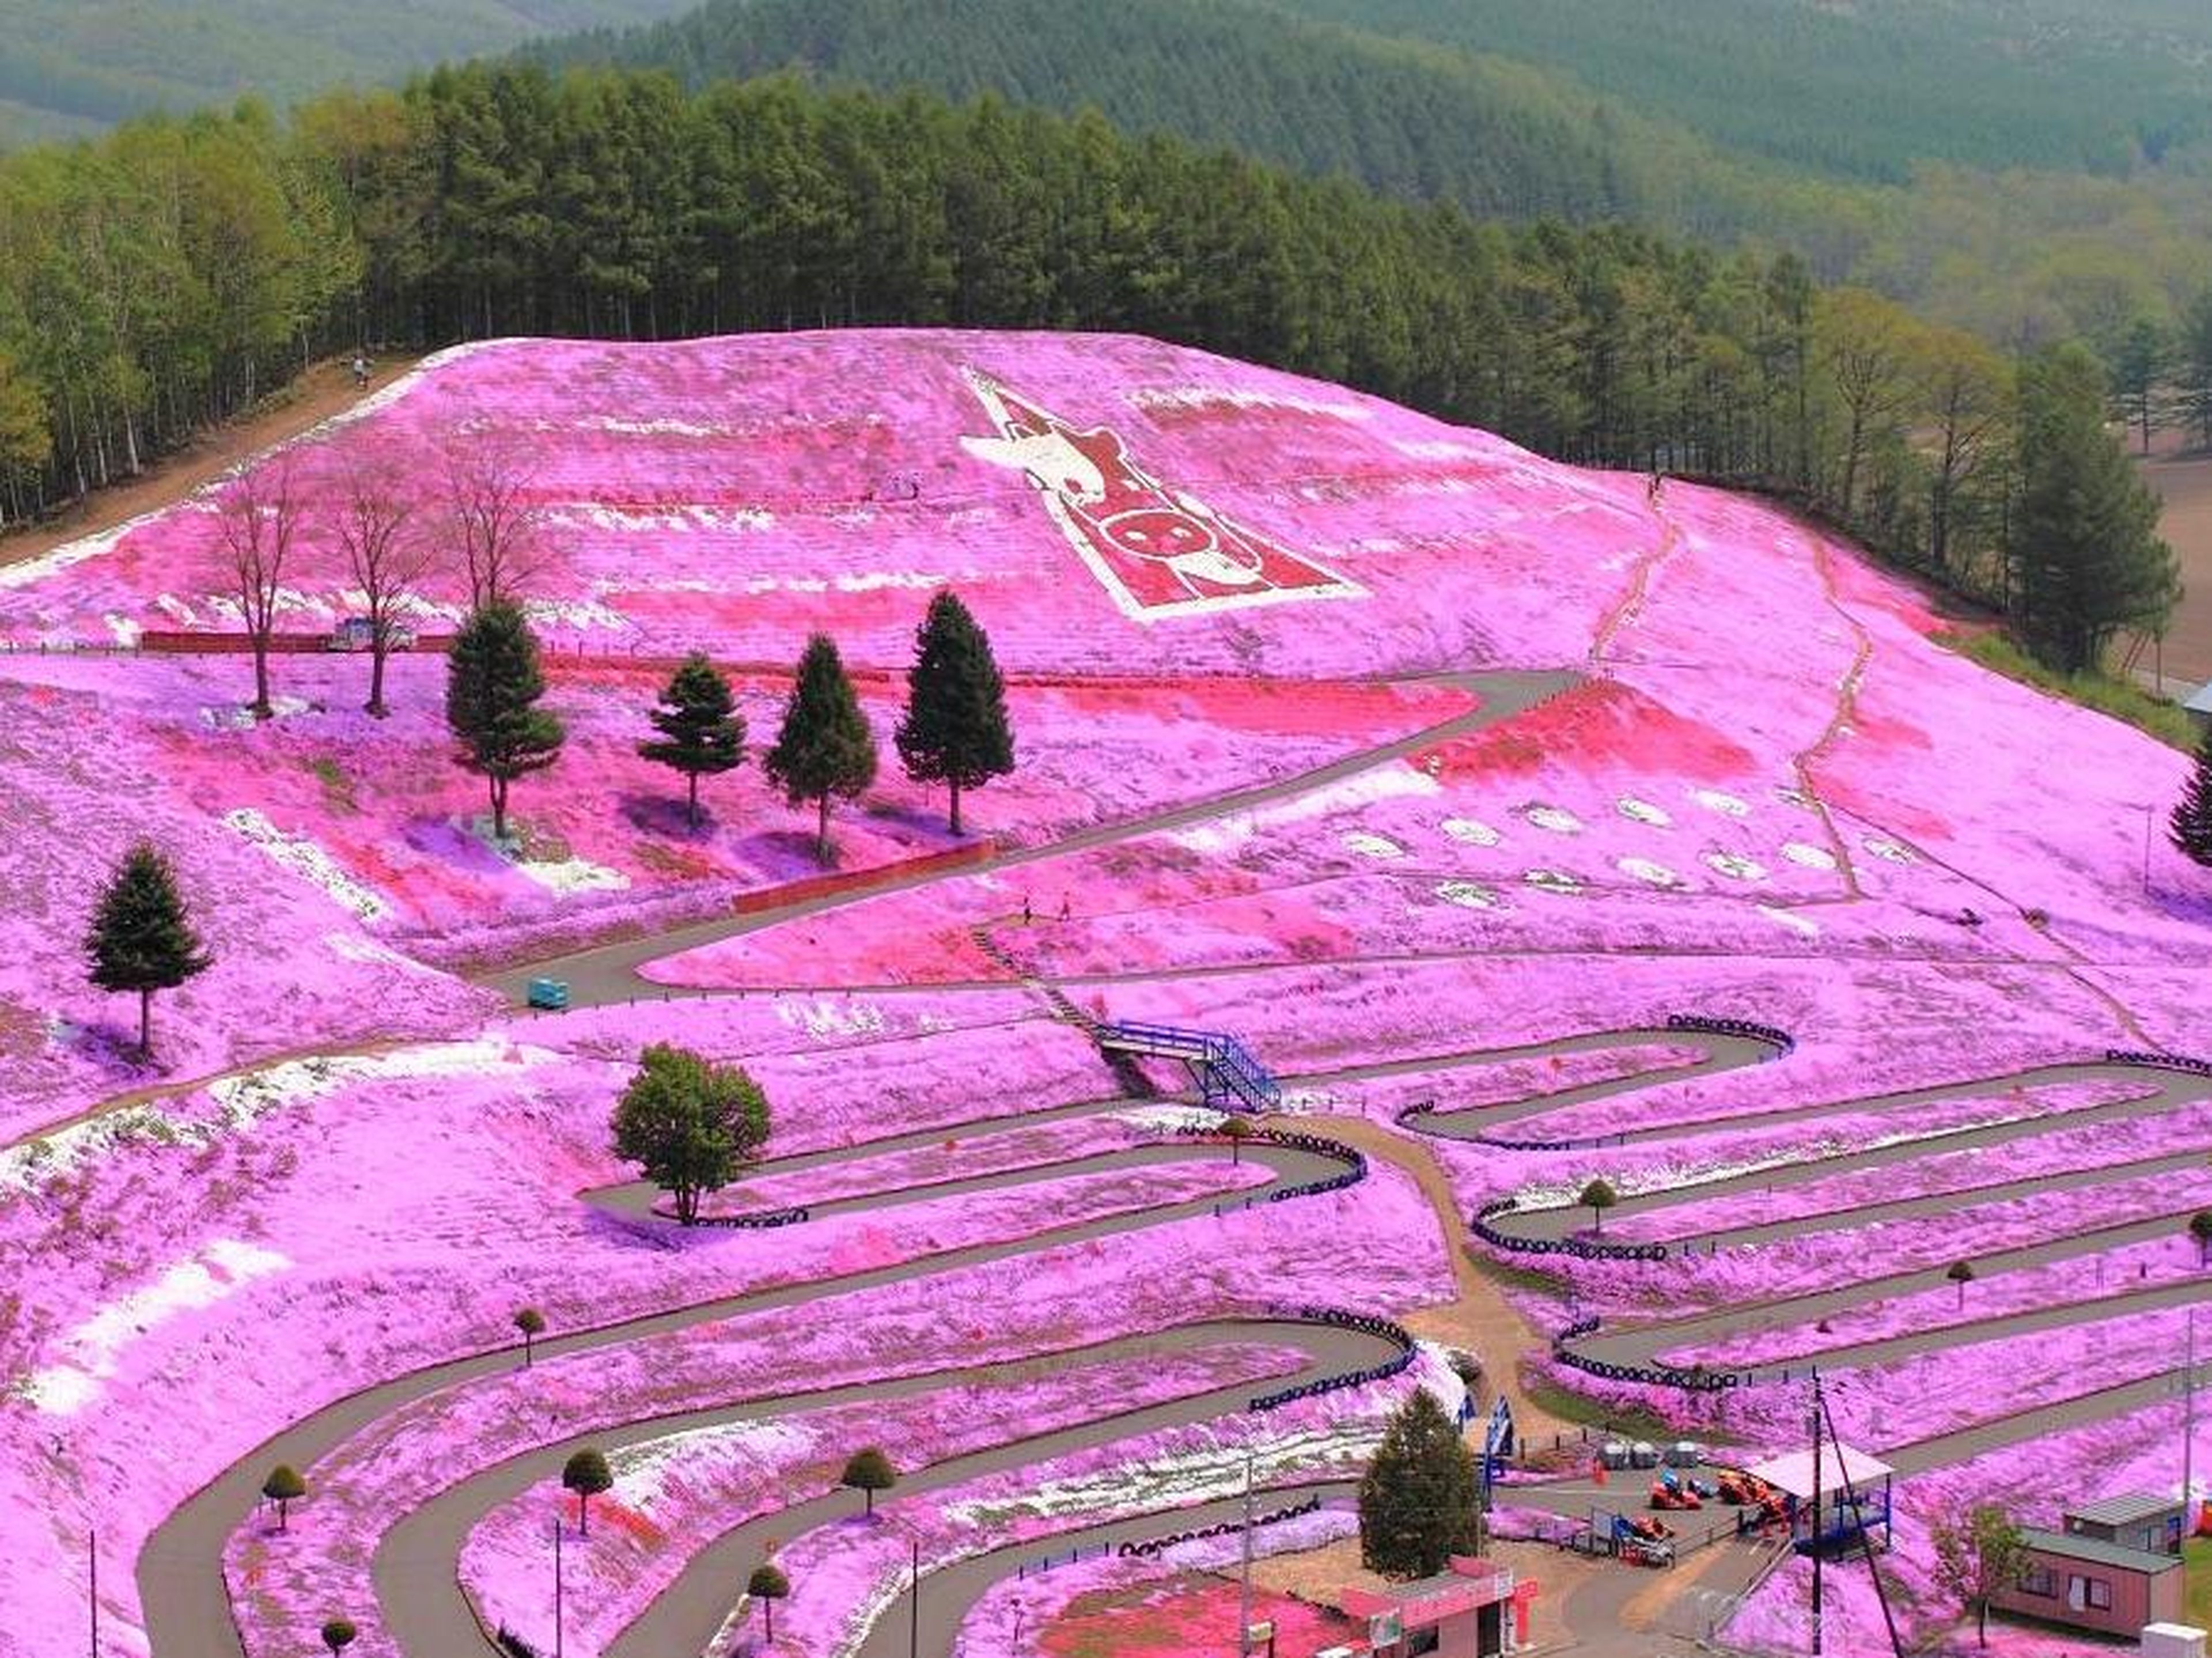 De lejos este parque en Hokkaido parece que está cubierto de pintura rosa.